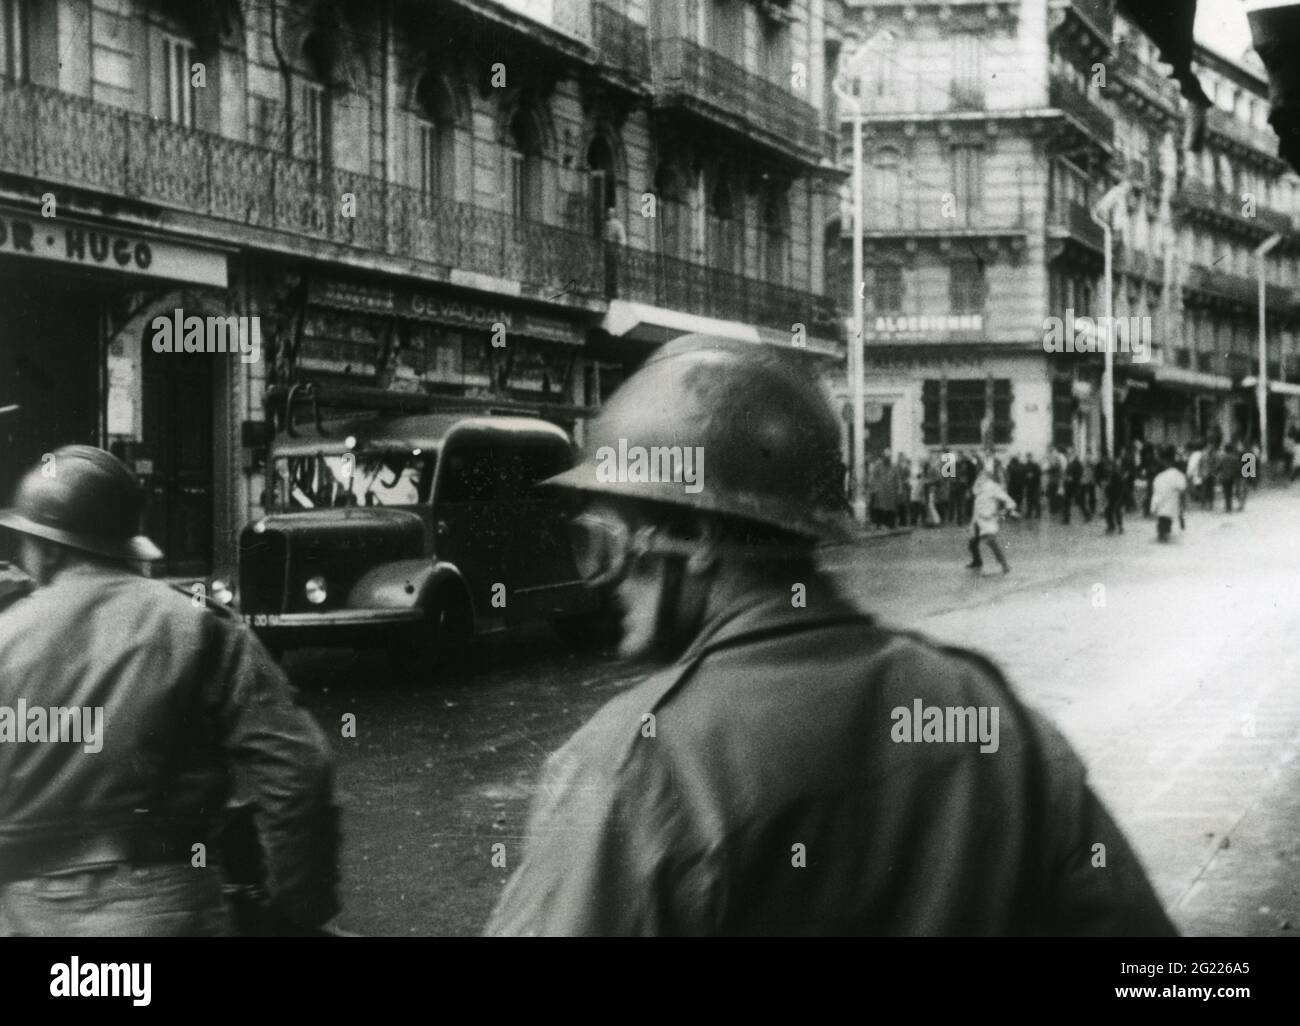 Géographie / voyage, Algérie, guerre d'indépendance, émeutes à Alger, 19.12.1960, INFO-AUTORISATION-DROITS-SUPPLÉMENTAIRES-NON-DISPONIBLE Banque D'Images